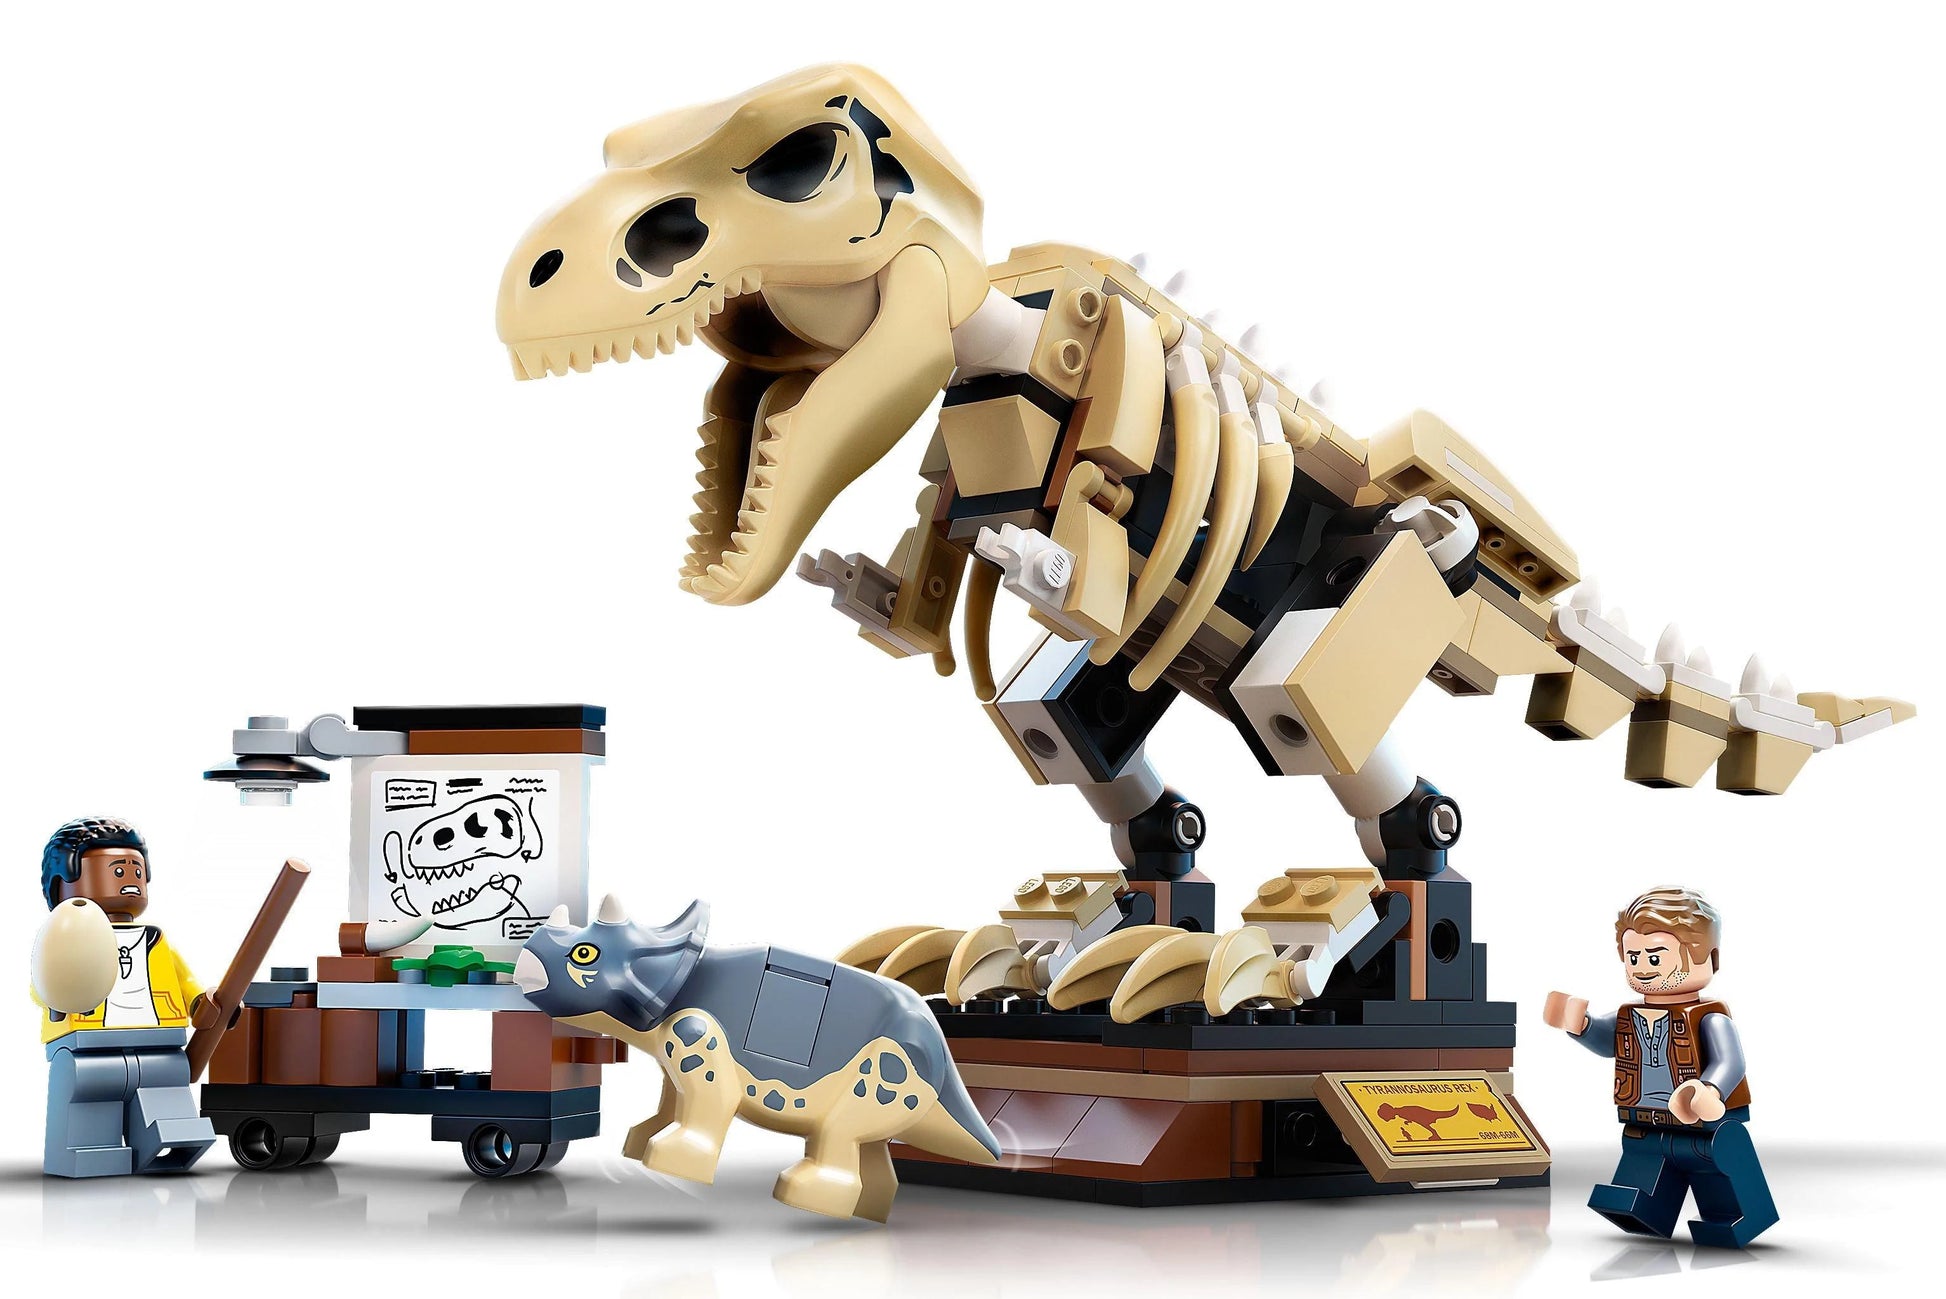 LEGO® Jurassic World 76940 T. Rex-Skelett in der Fossilienausstellung - 198 Teile - Peer Online Shop